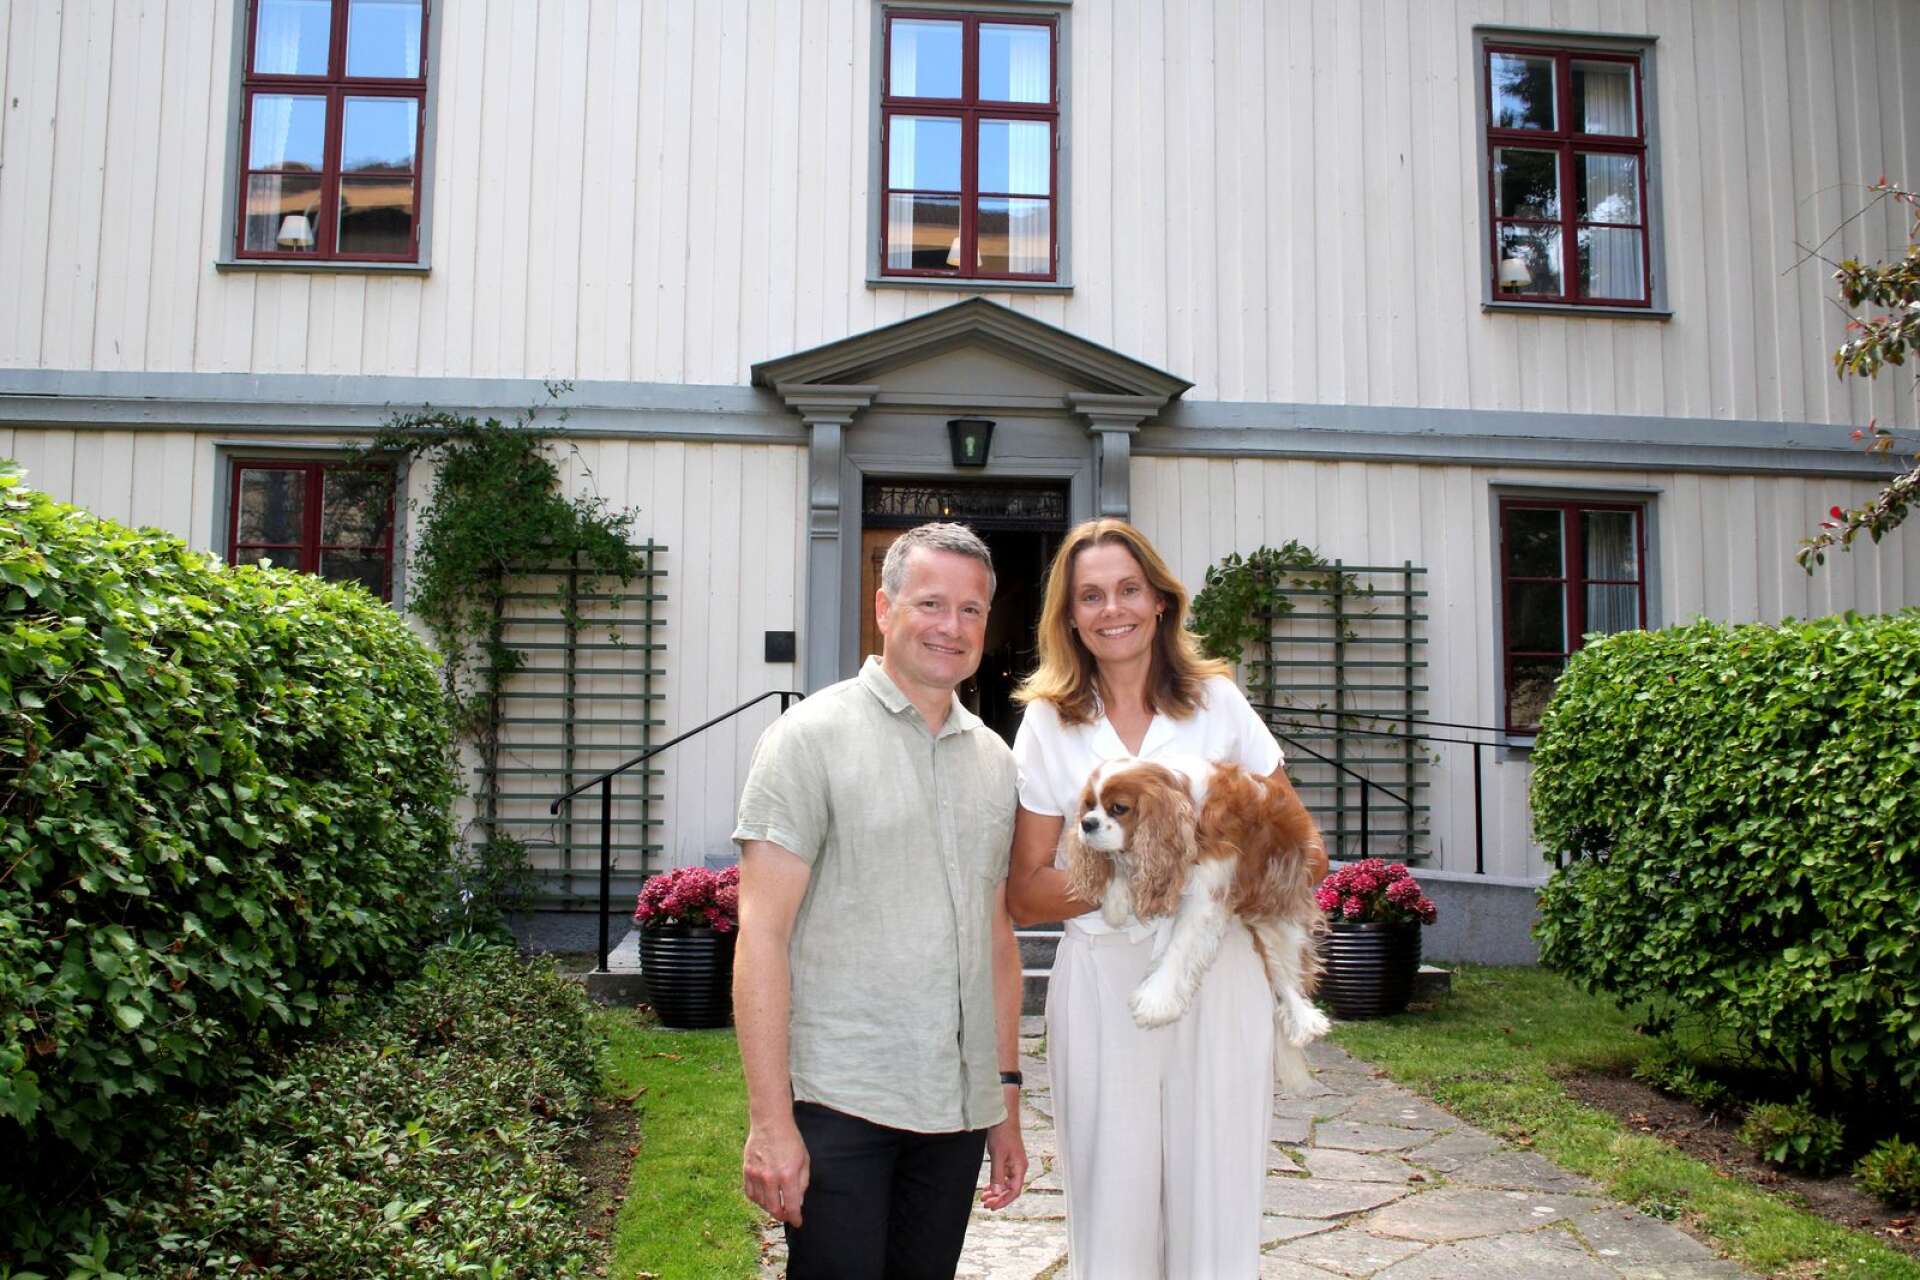 Sören och Veronica Dalevi fick en flytt till ny bostad på kuppen, när Sören fick jobbet som biskop i Karlstad stift. Det tog ett tag att bo in sig efter flytten från 70-talsvillan till 1700-talshuset, avslöjar de.